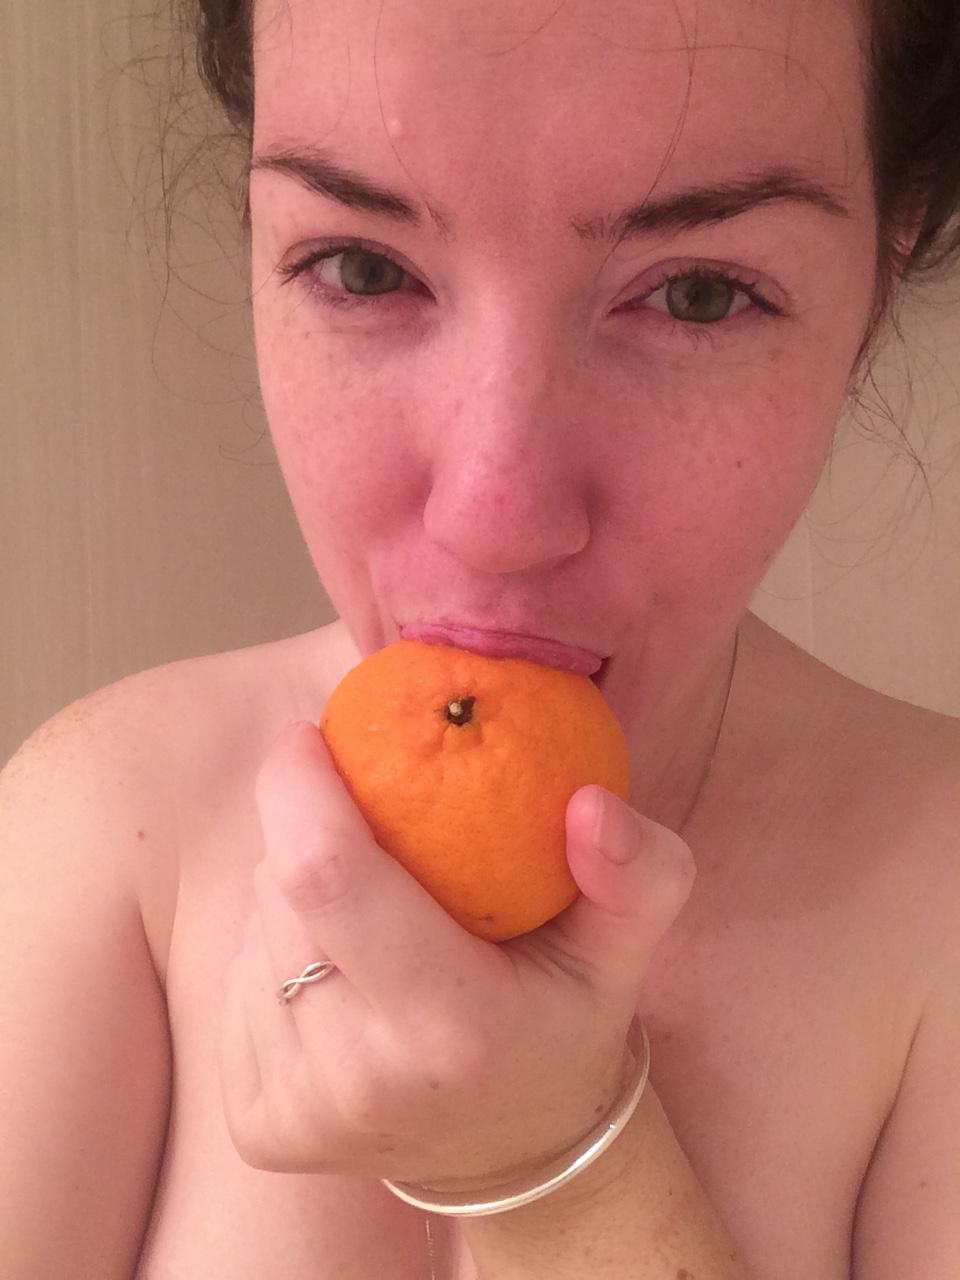 Существует сообщество людей, которые едят апельсины в душе, и им классно